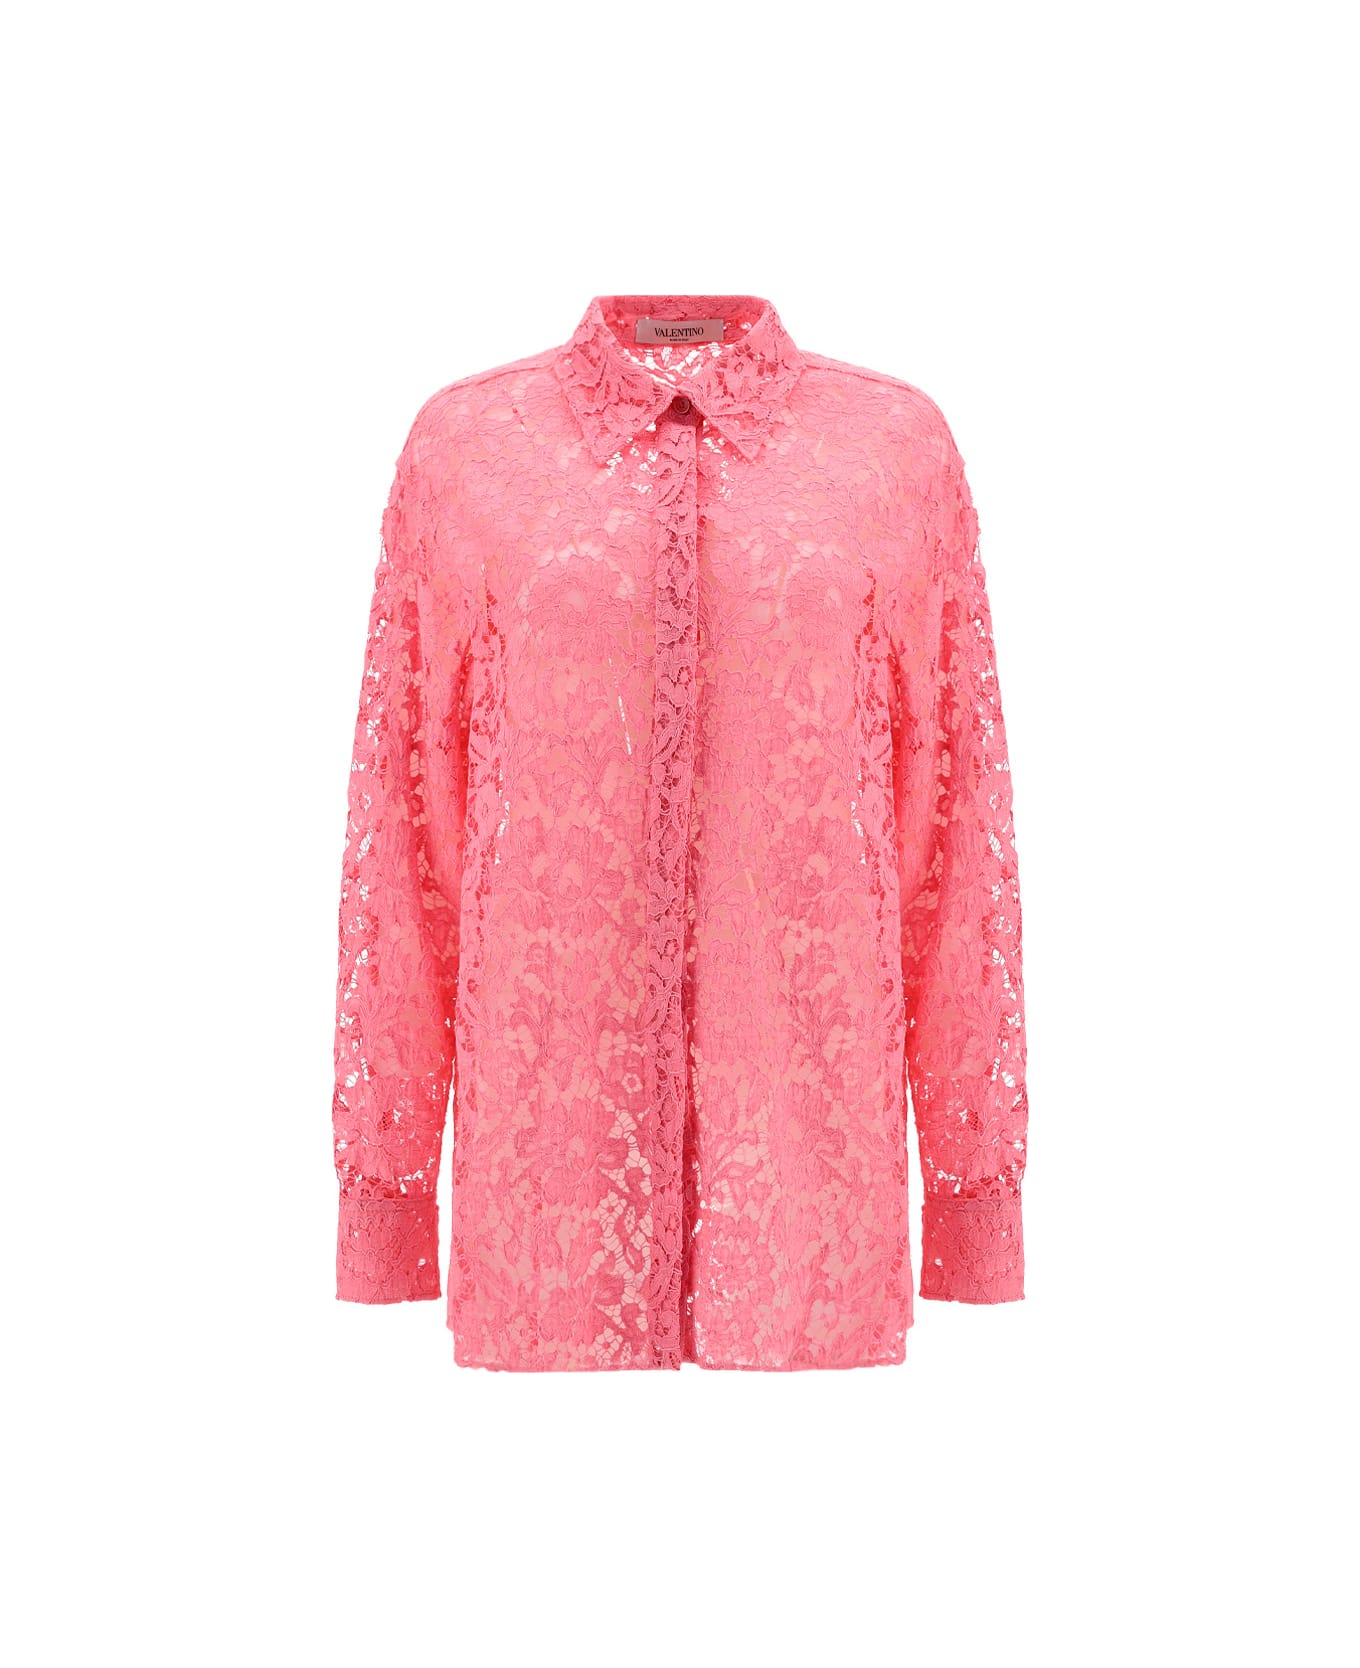 Valentino Shirt - Rosa シャツ